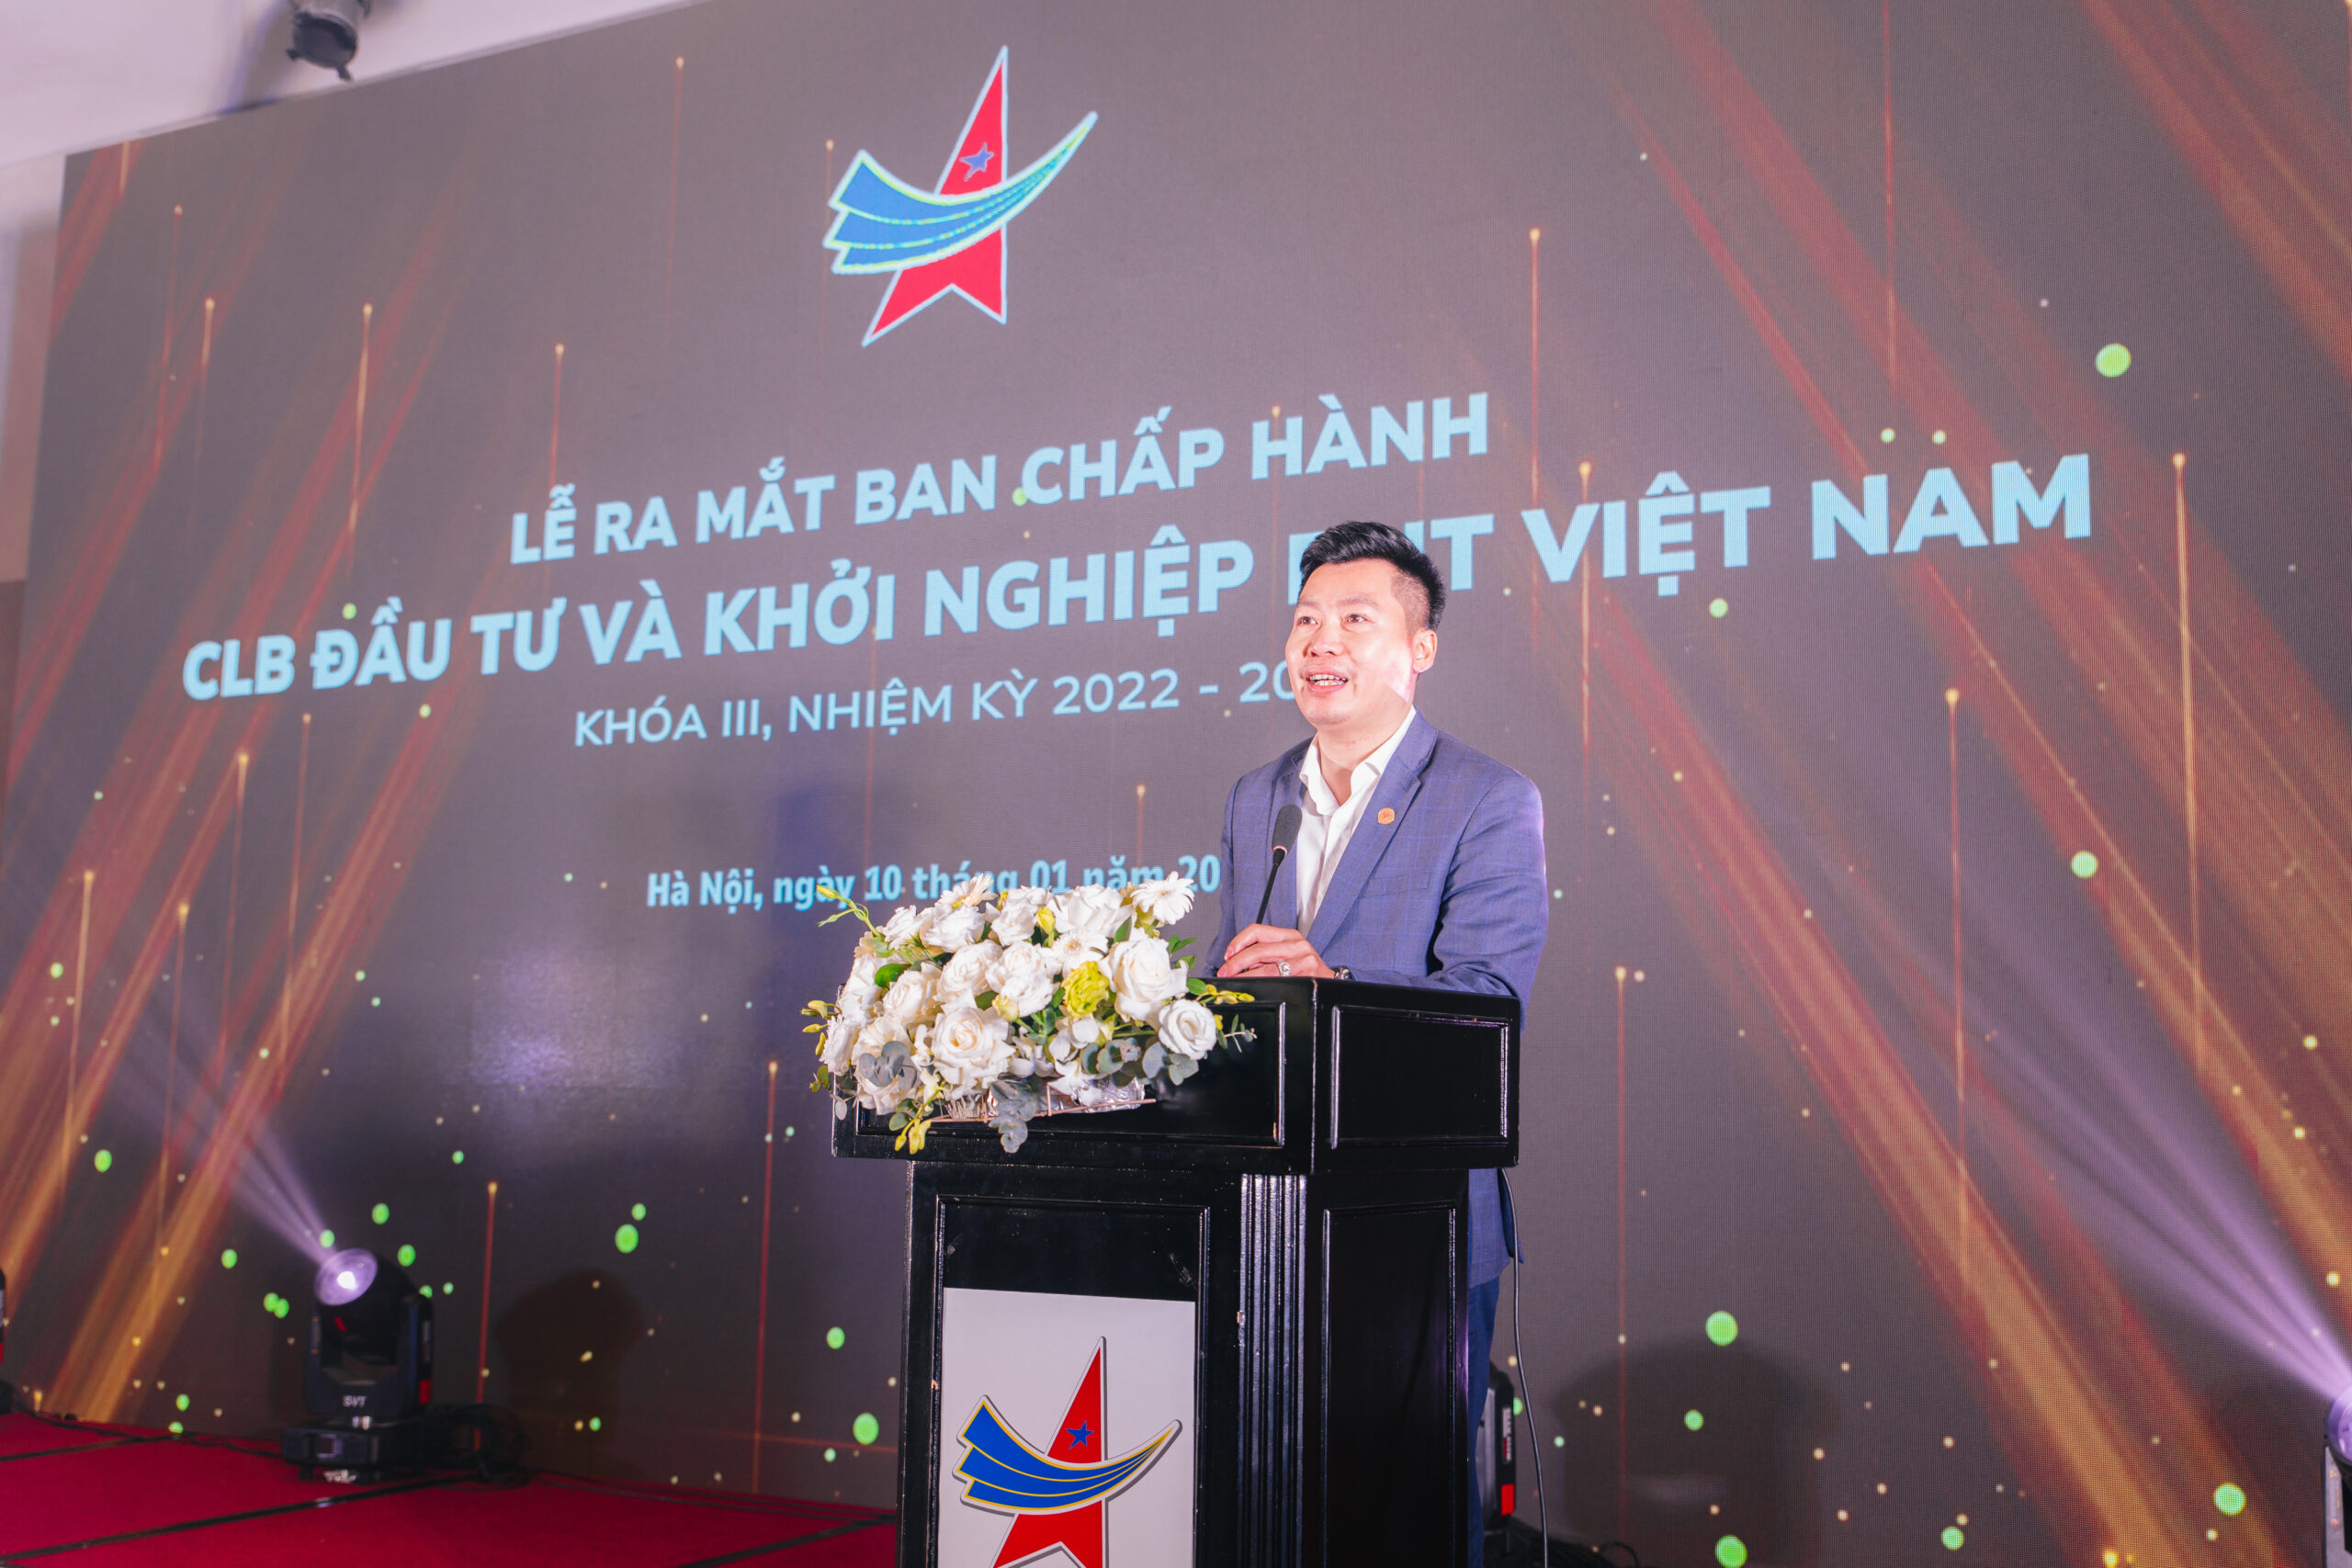 Anh Hoàng Công Đoàn, Phó Chủ tịch Hội Doanh nhân trẻ Việt Nam phát biểu tại chương trình.